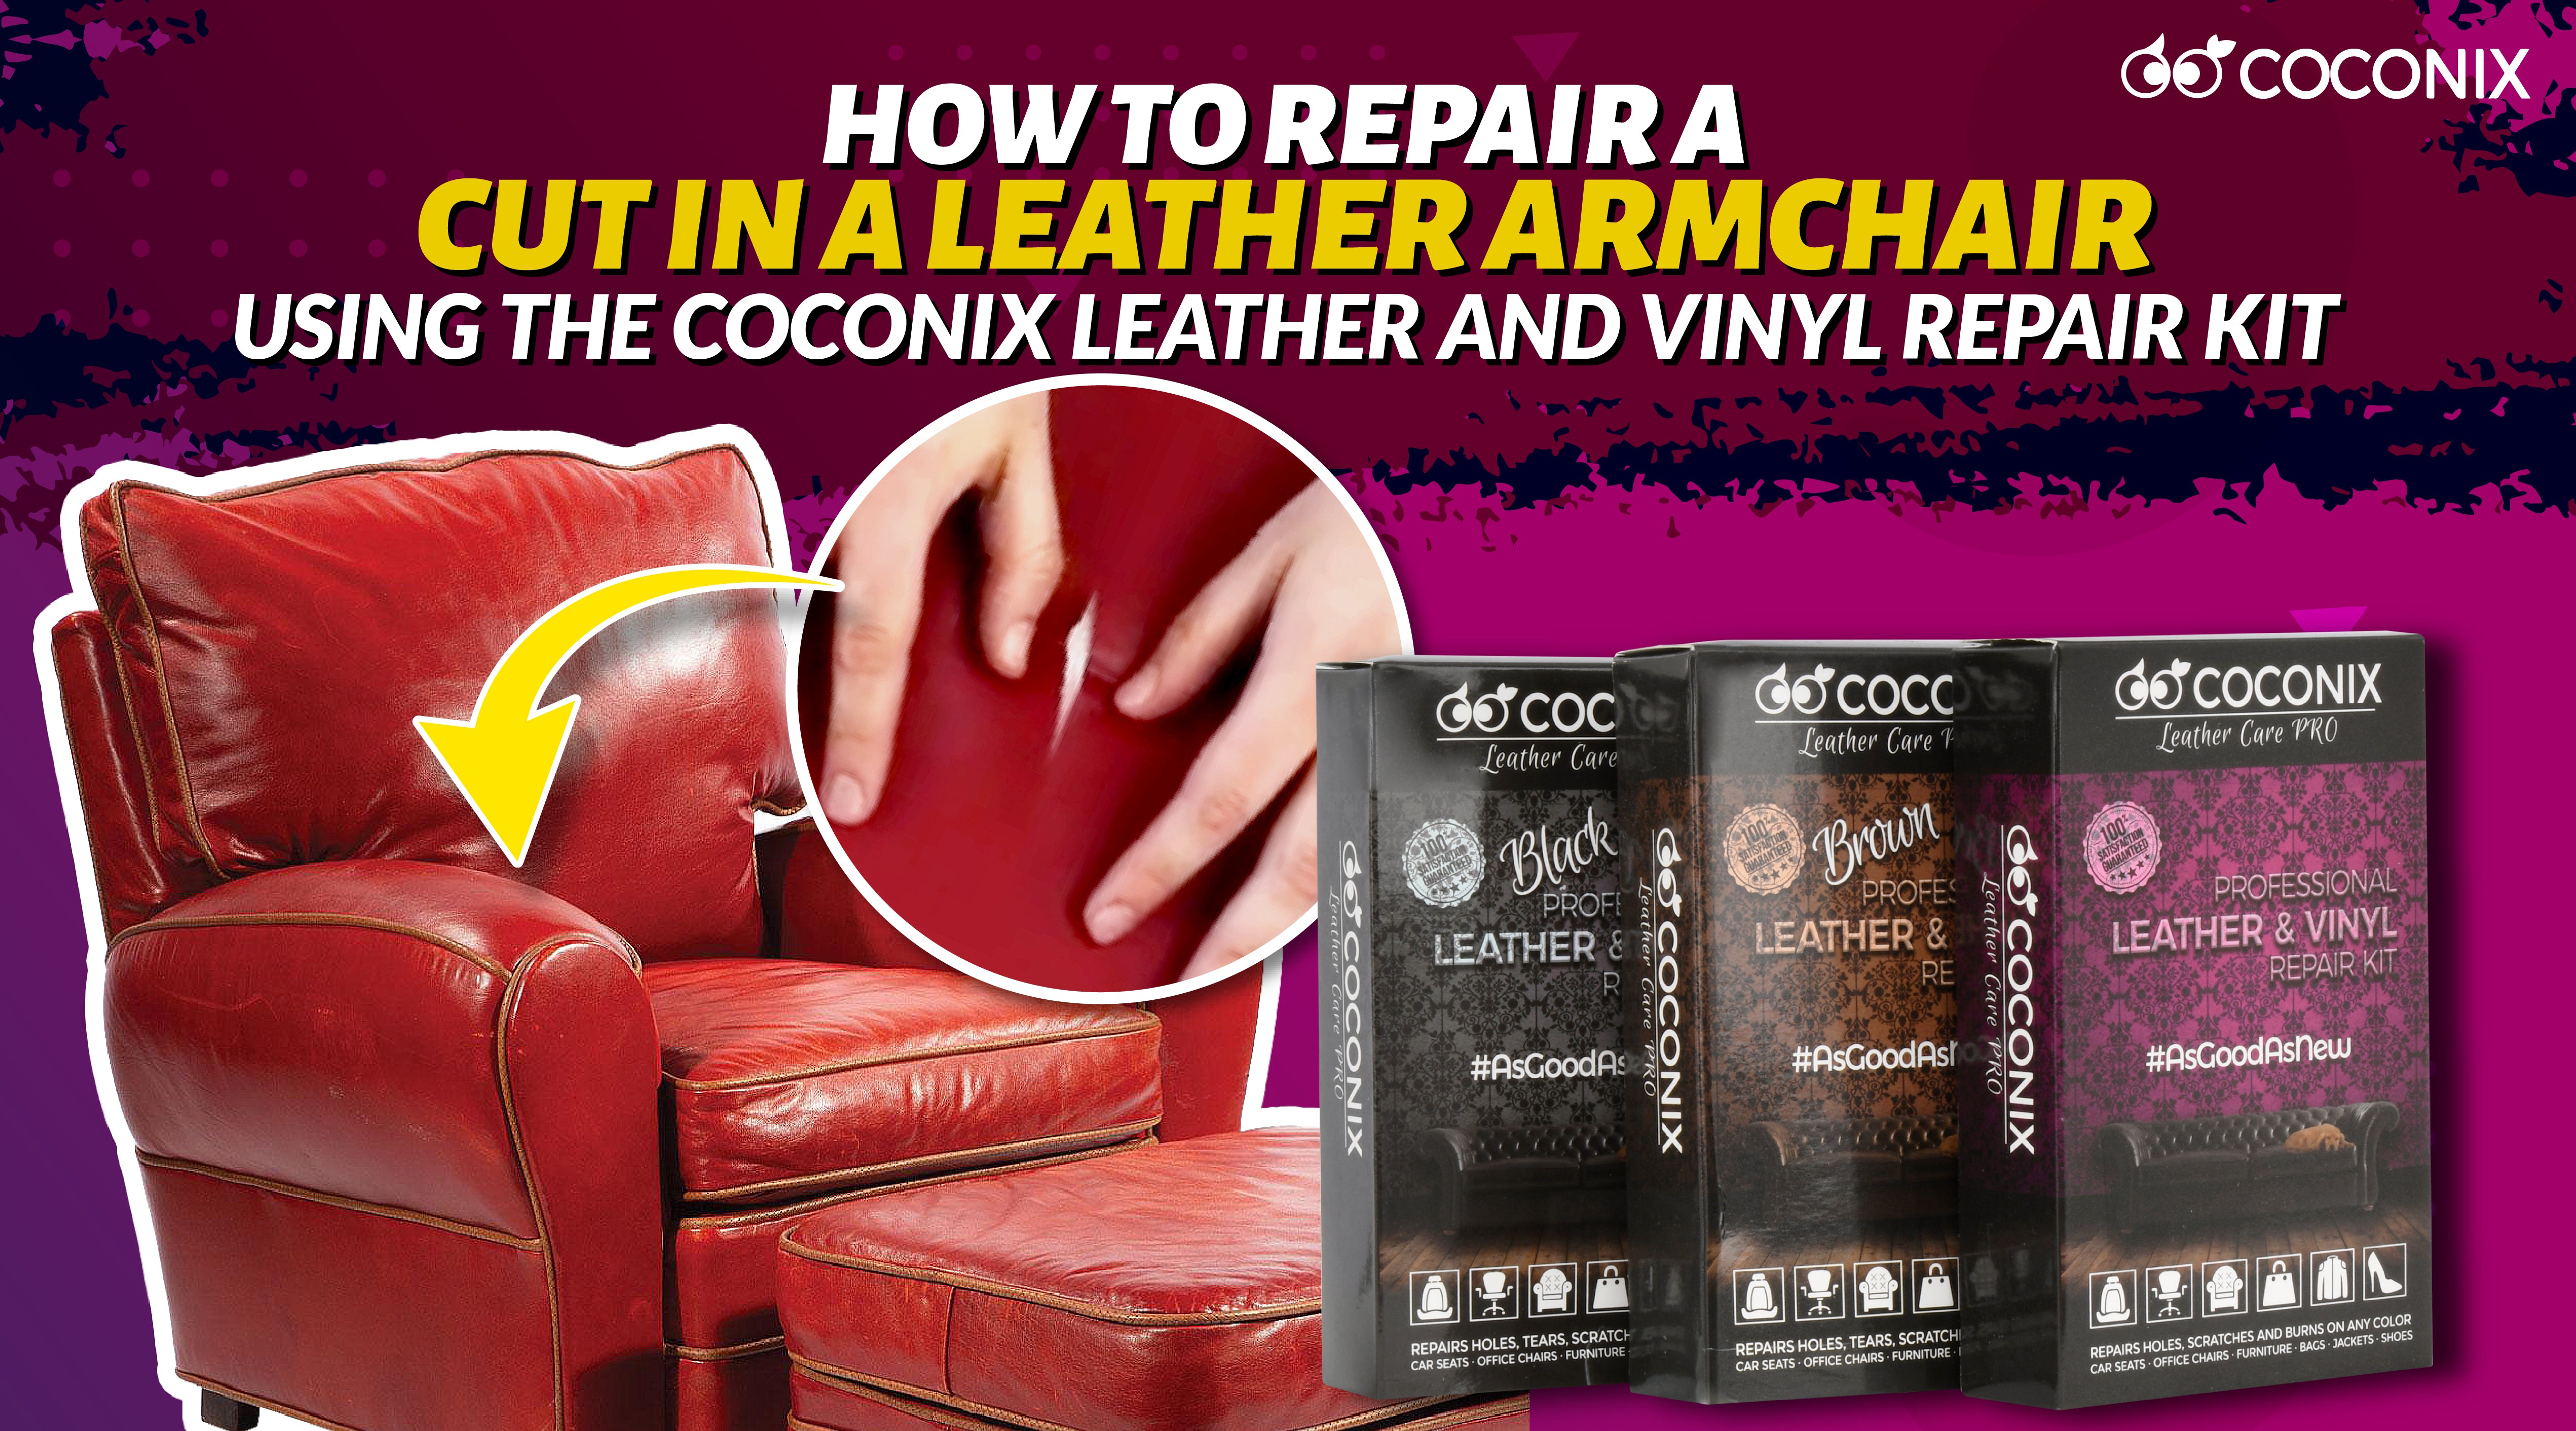 Fabric Repair Kit : Fabric/Carpet/Upholstery Repair : Invisible Repair  Products